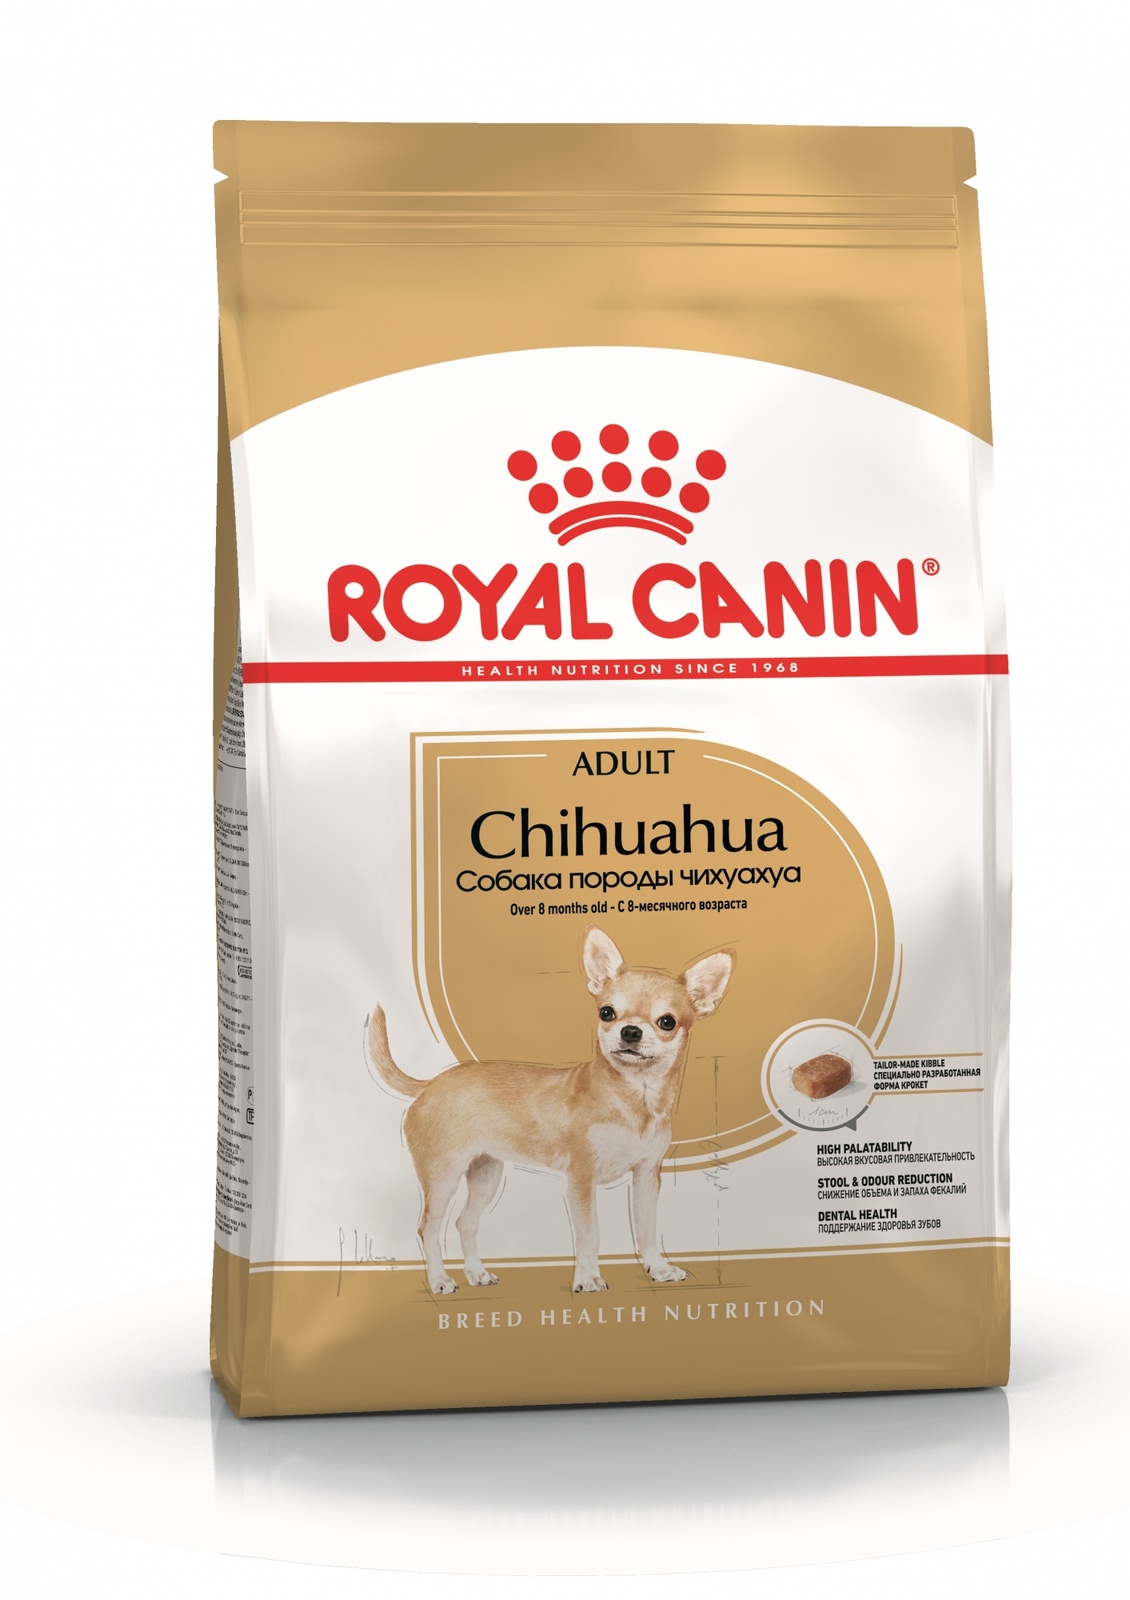 Для взрослого чихуахуа с 8 месяцев (3 кг) Royal Canin (сухие корма) Для взрослого чихуахуа с 8 месяцев (3 кг) - фото 1